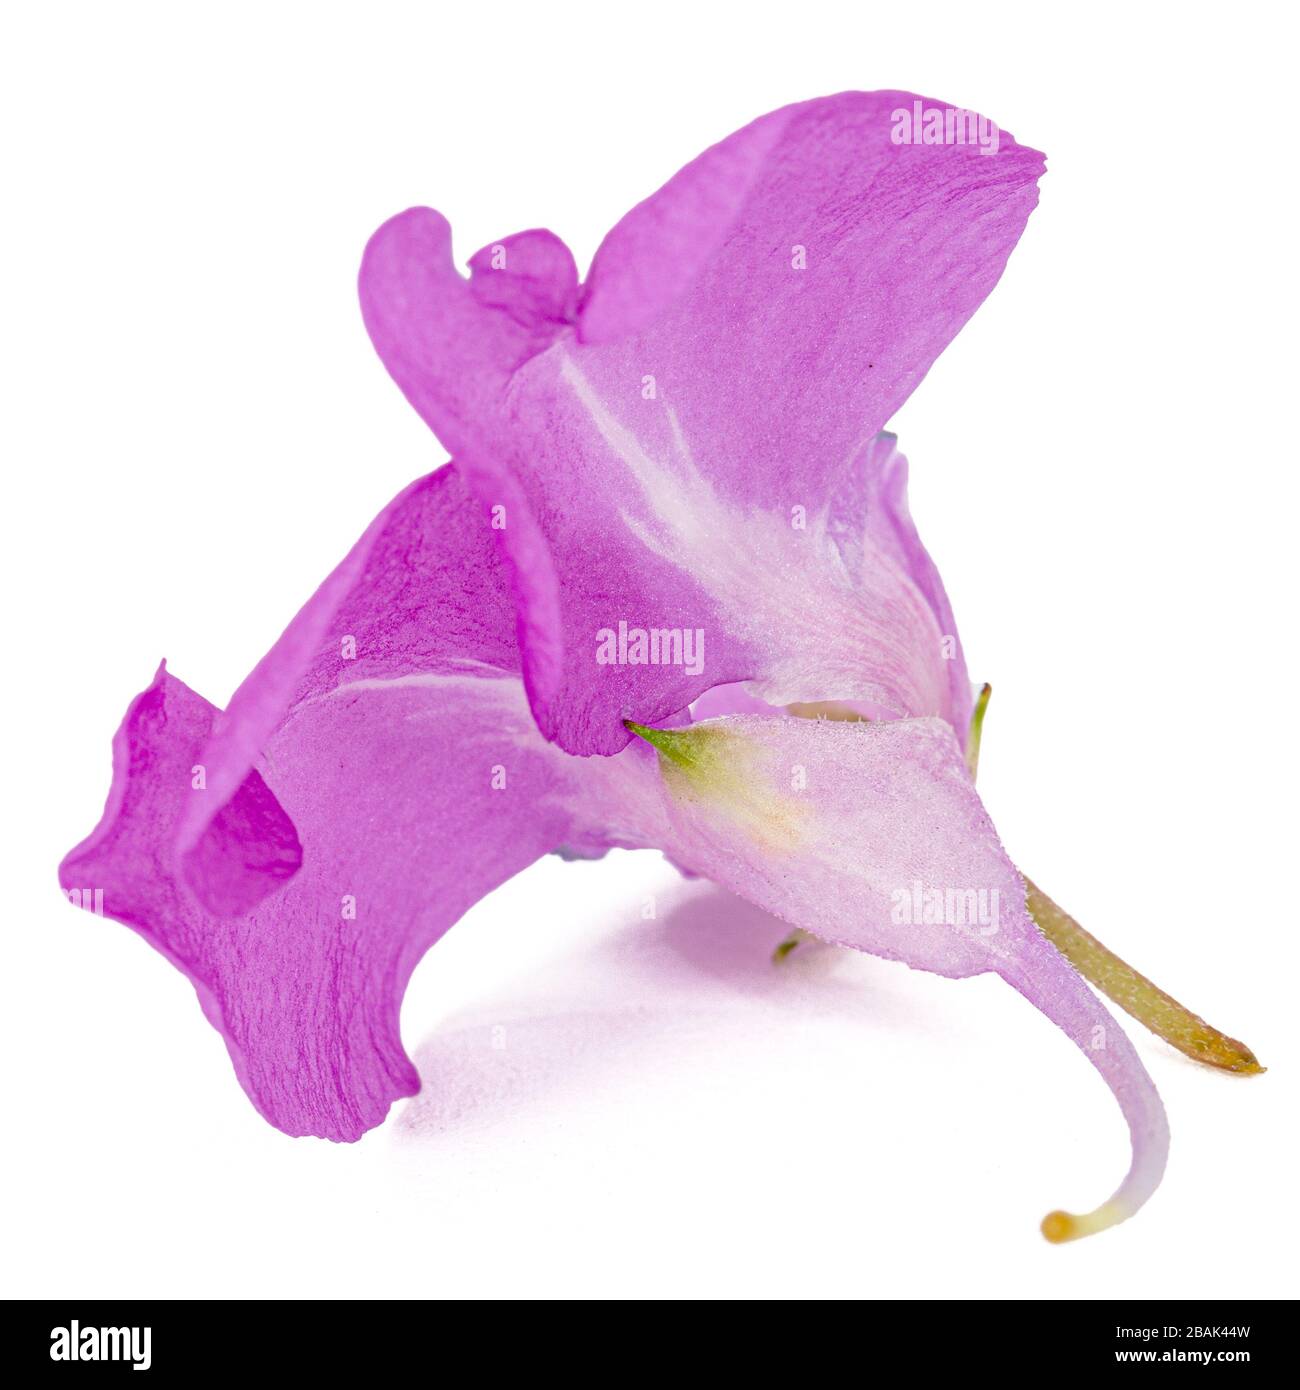 Fleur violette d'Impatiens balsamina, potager balsam jewelweid touch-me-not  plante, isolée sur fond blanc Photo Stock - Alamy